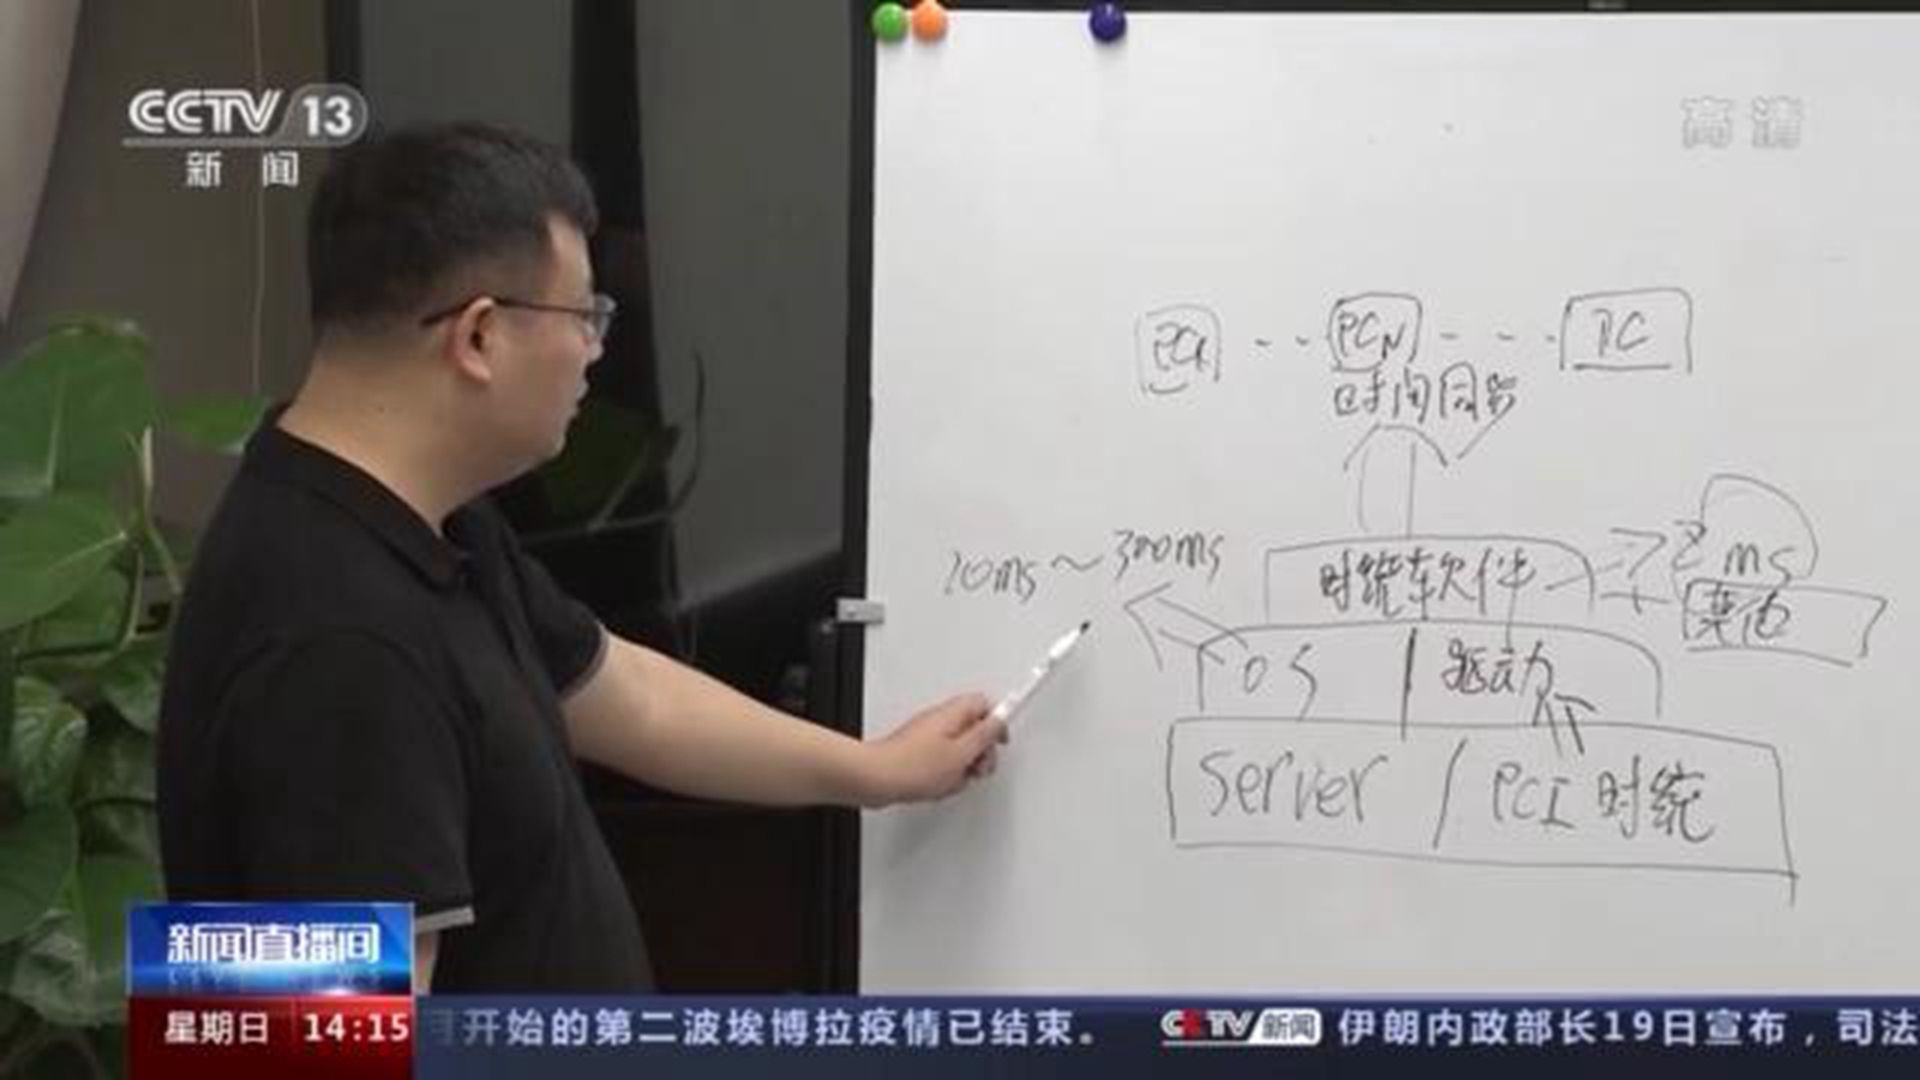 麒麟操作系统团队工作画面。（中国央视截图）